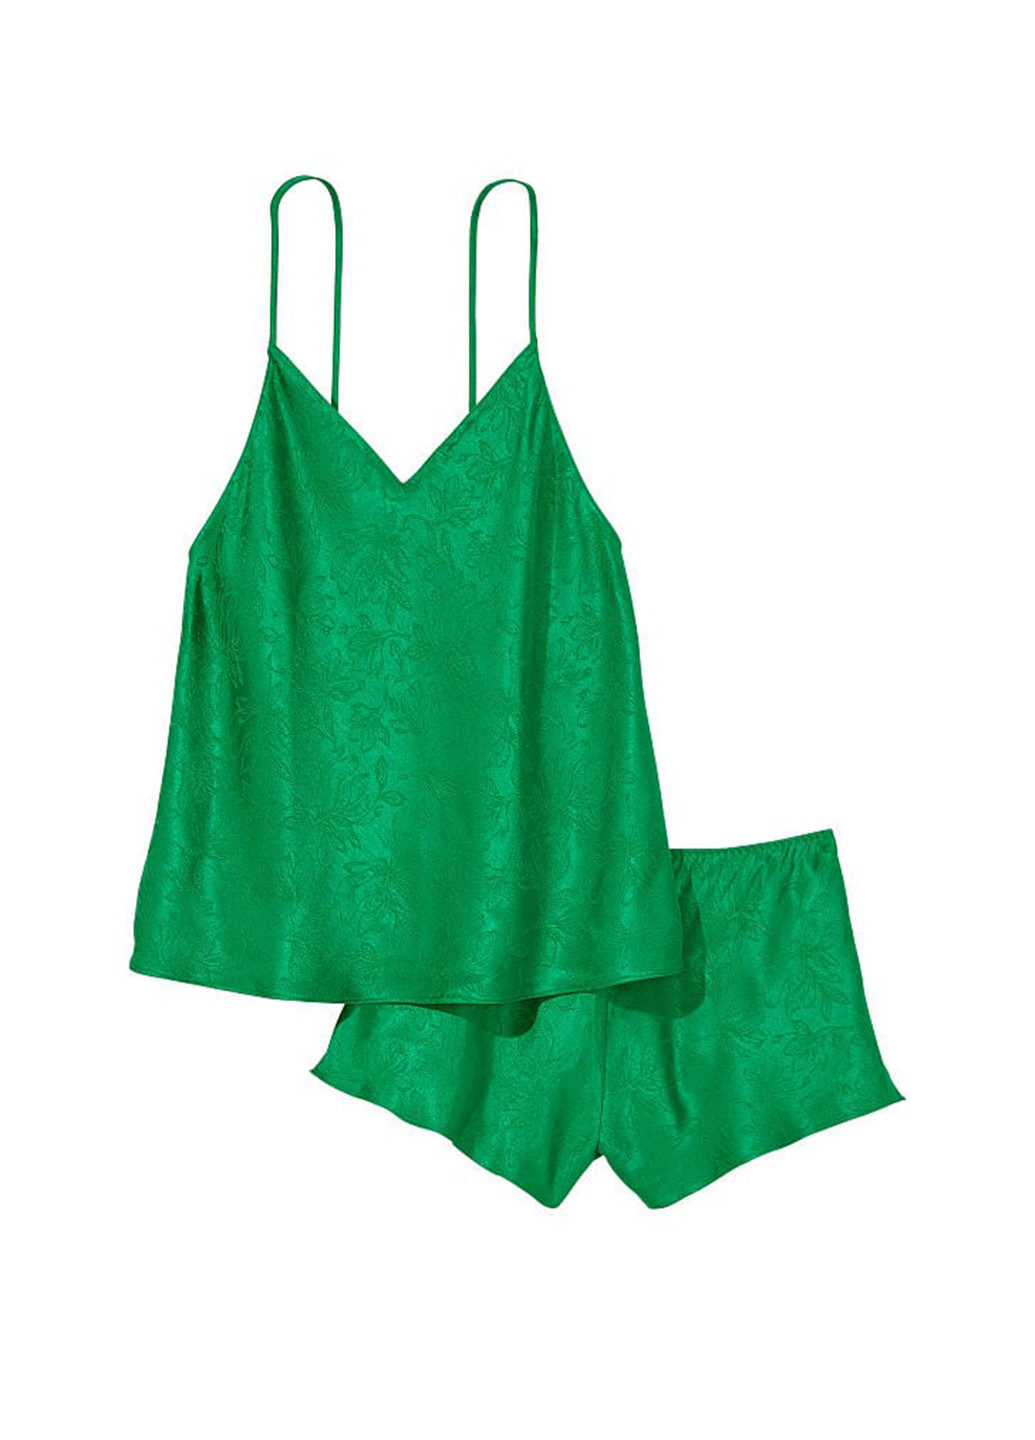 Зеленая всесезон пижама (топ, шорты) топ + шорты Victoria's Secret